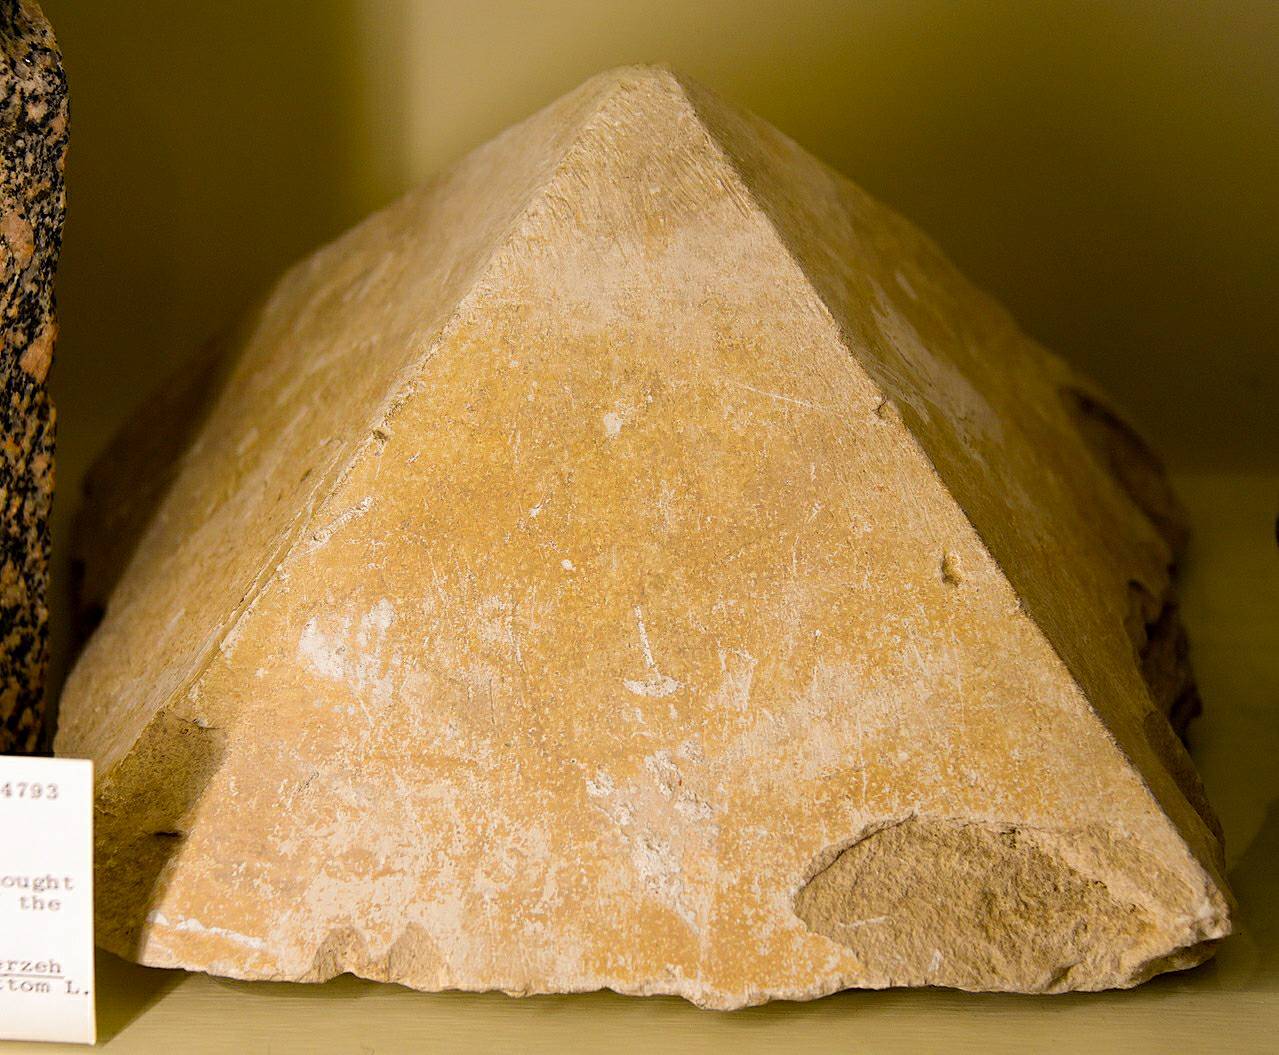 Пирамида од кречњака. Сир Флиндерс Петрие је сматрао да ово представља модел за Хавара пирамиду. Огроман птолемејски програм изградње у Шедиту је предложен као крајња дестинација кречњачких стубова и блокова Средњег краљевства уклоњених из Хаваре, а сада изгубљених.